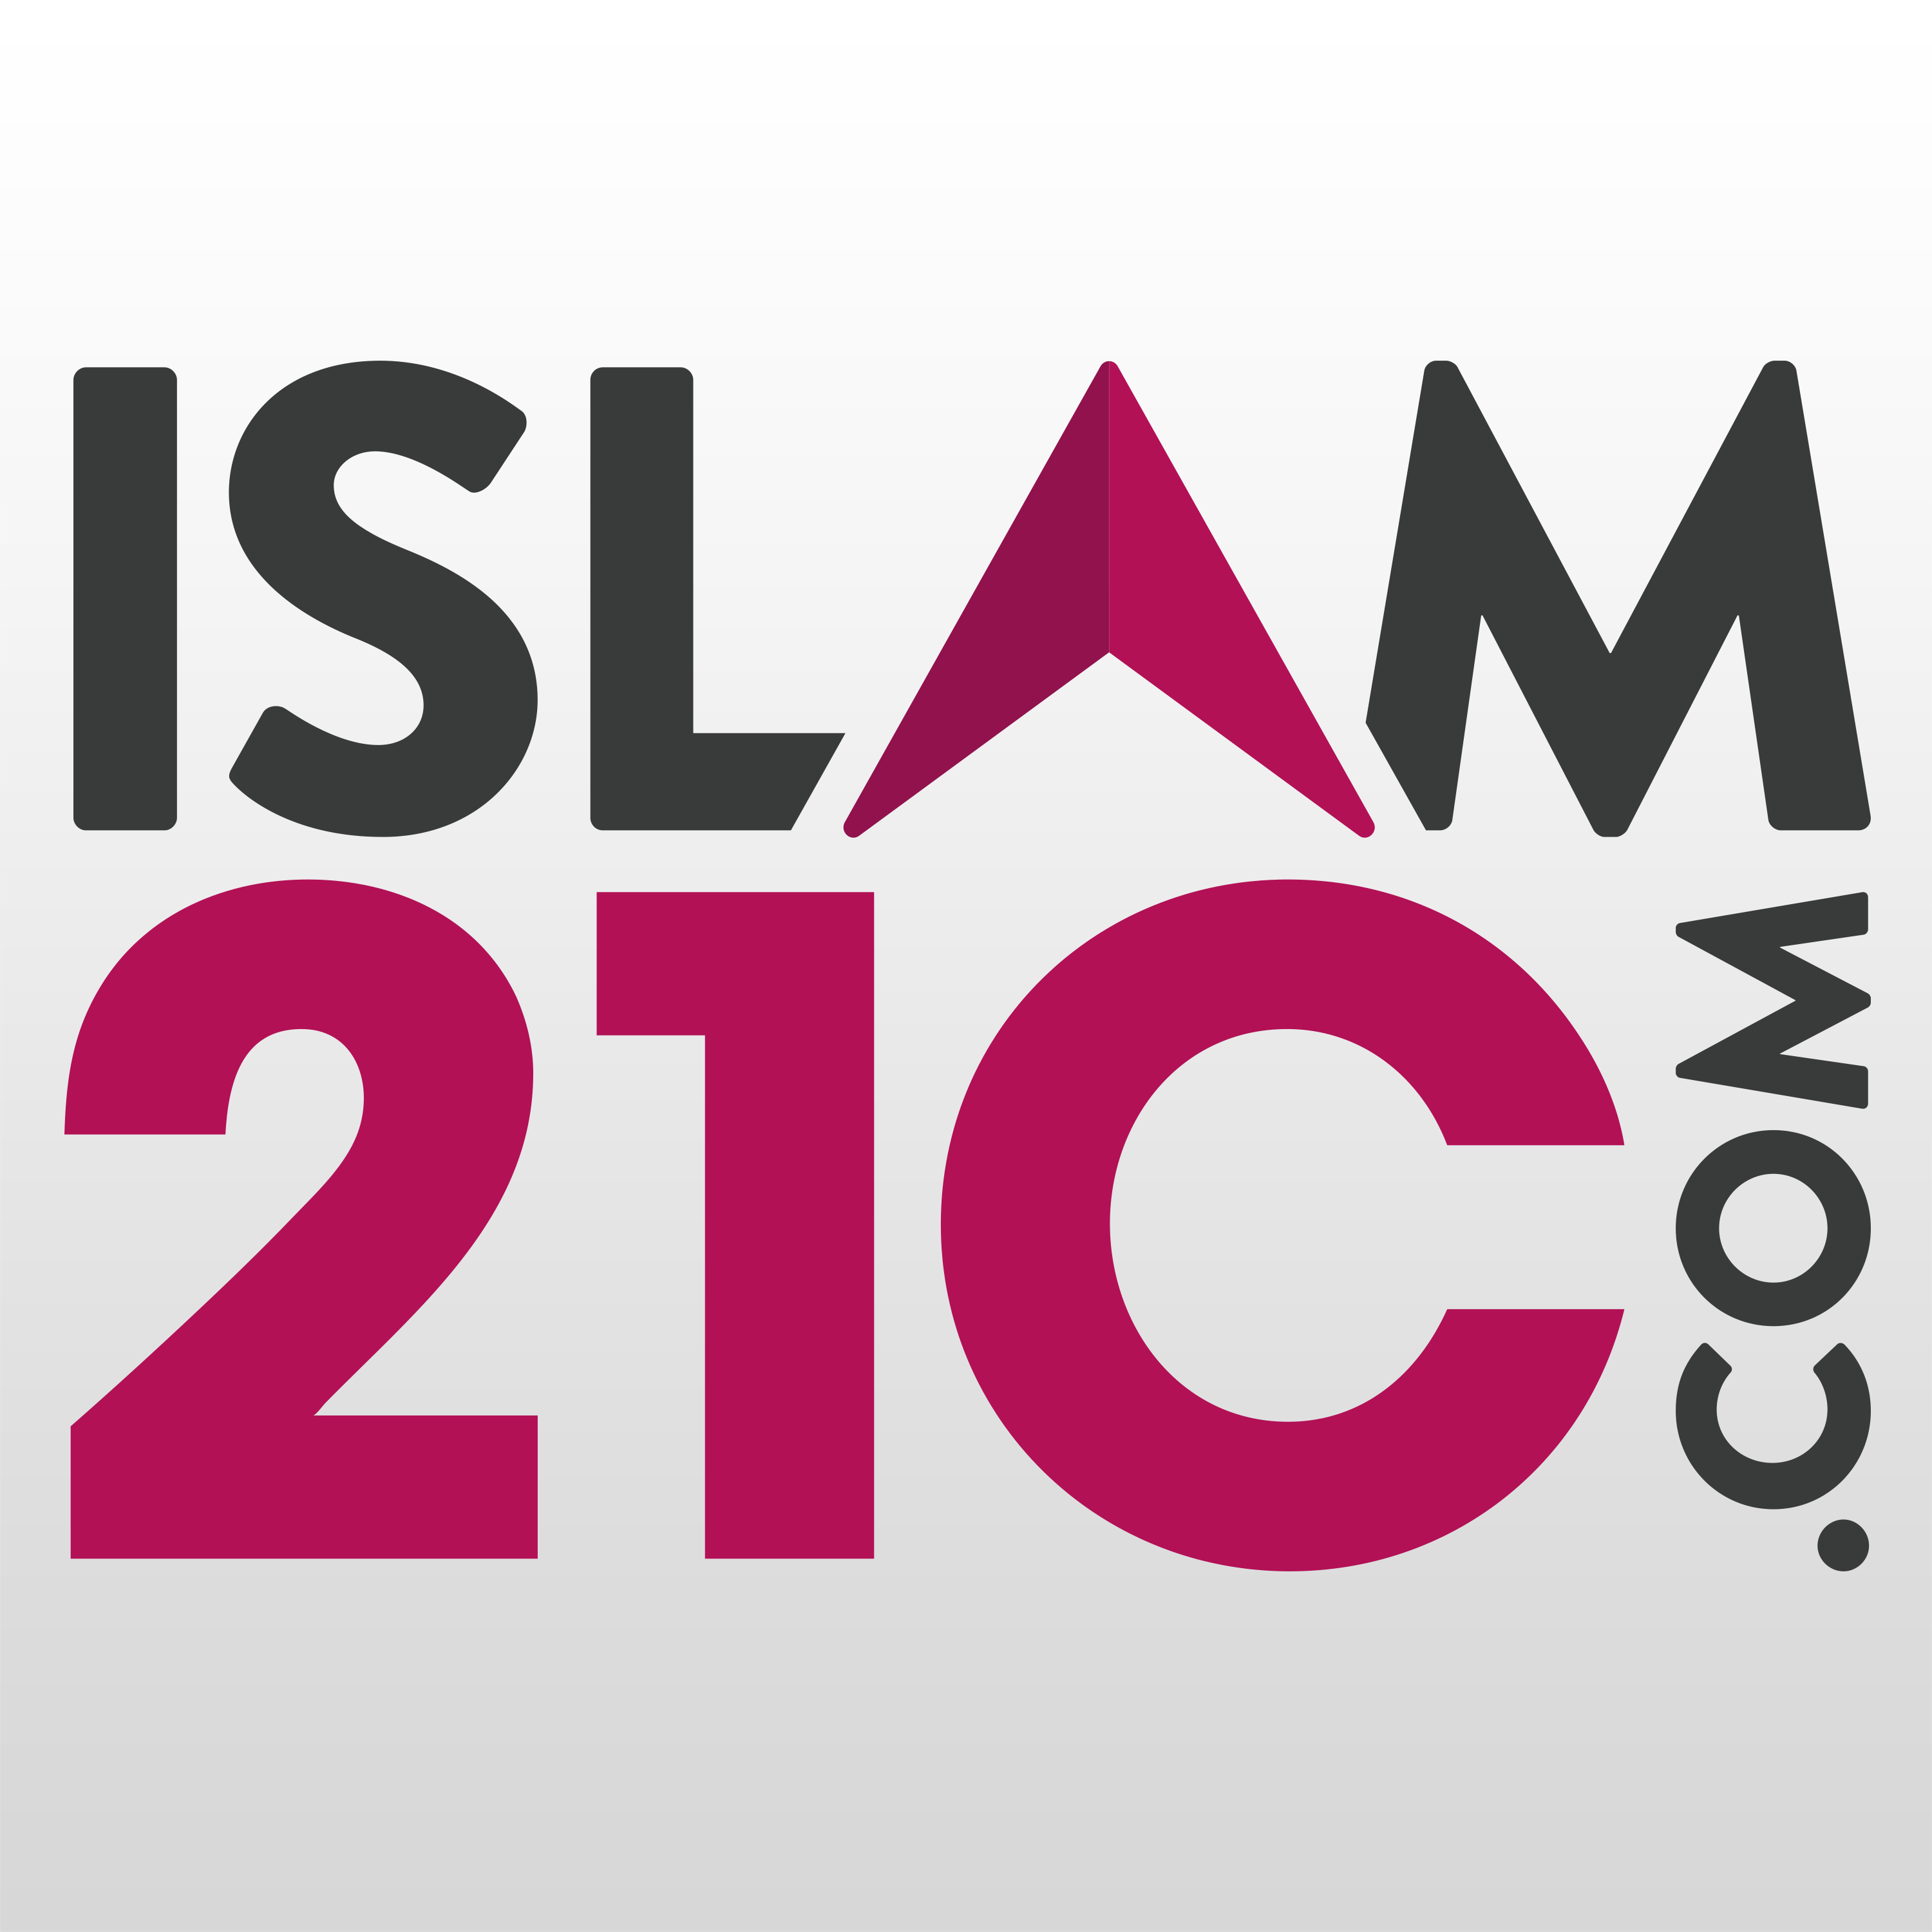 Islam21c Media